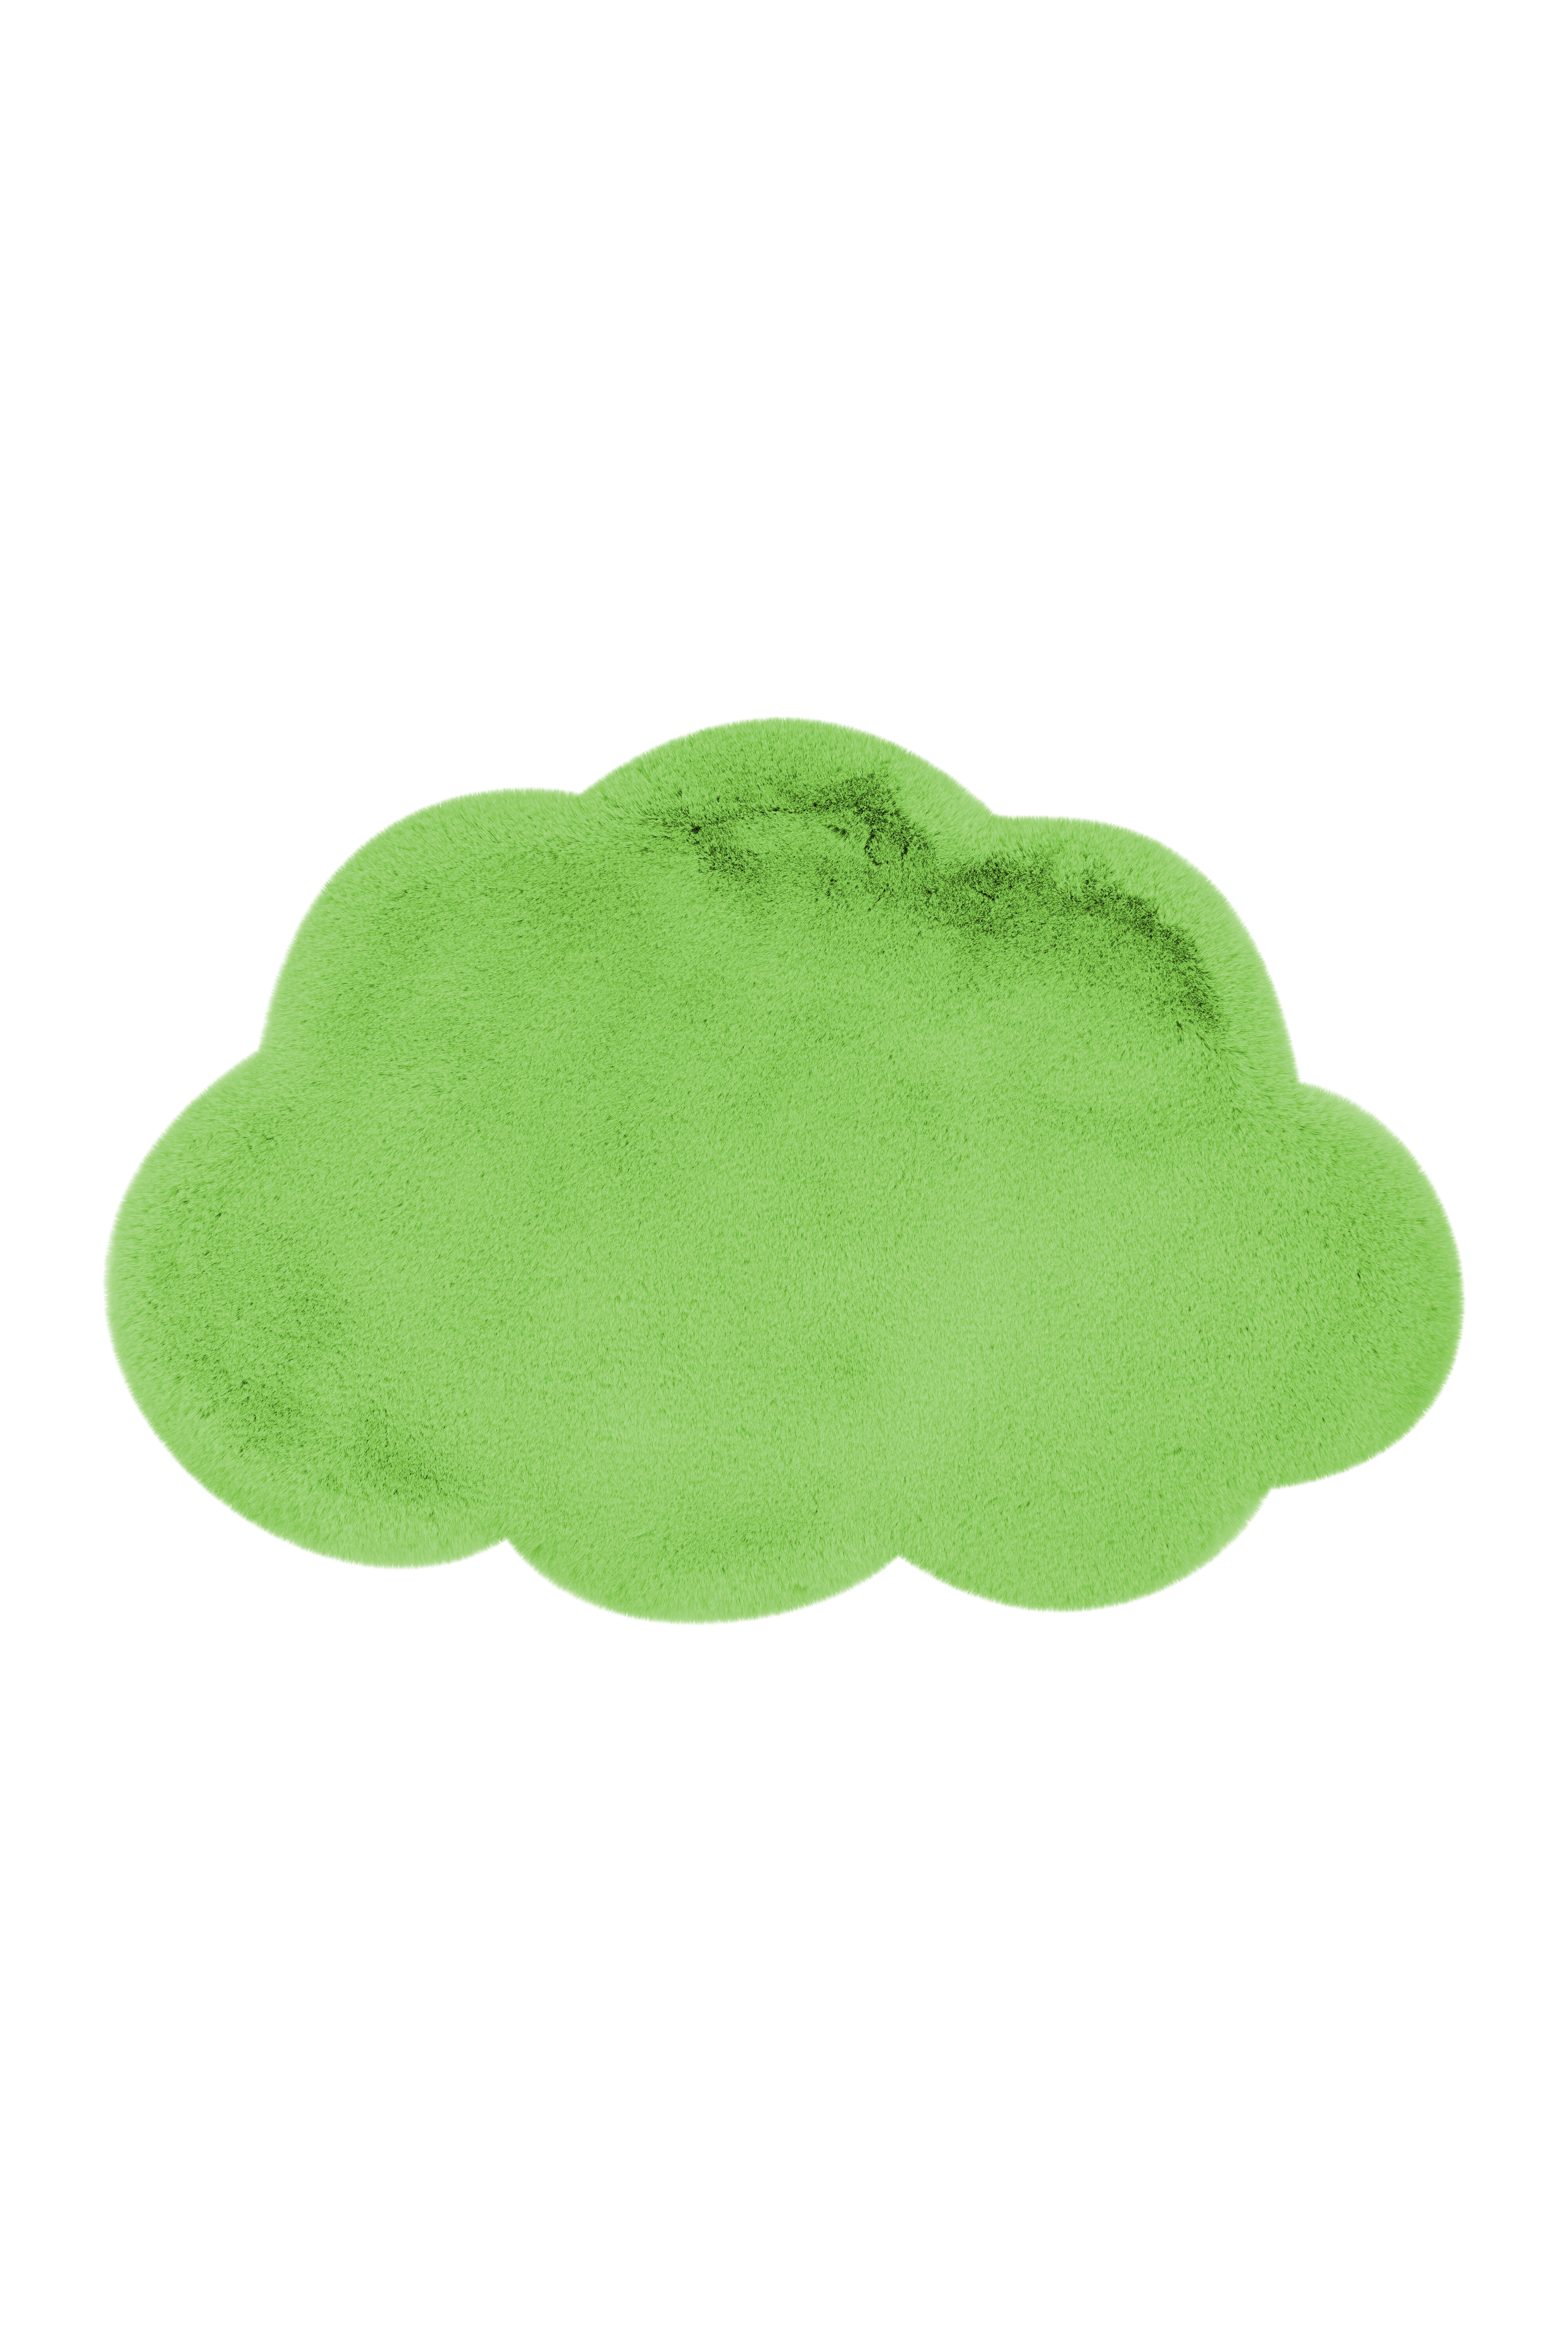 Kayoom Vloerkleed 'Wolkje' kleur Groen, 60 x 90cm